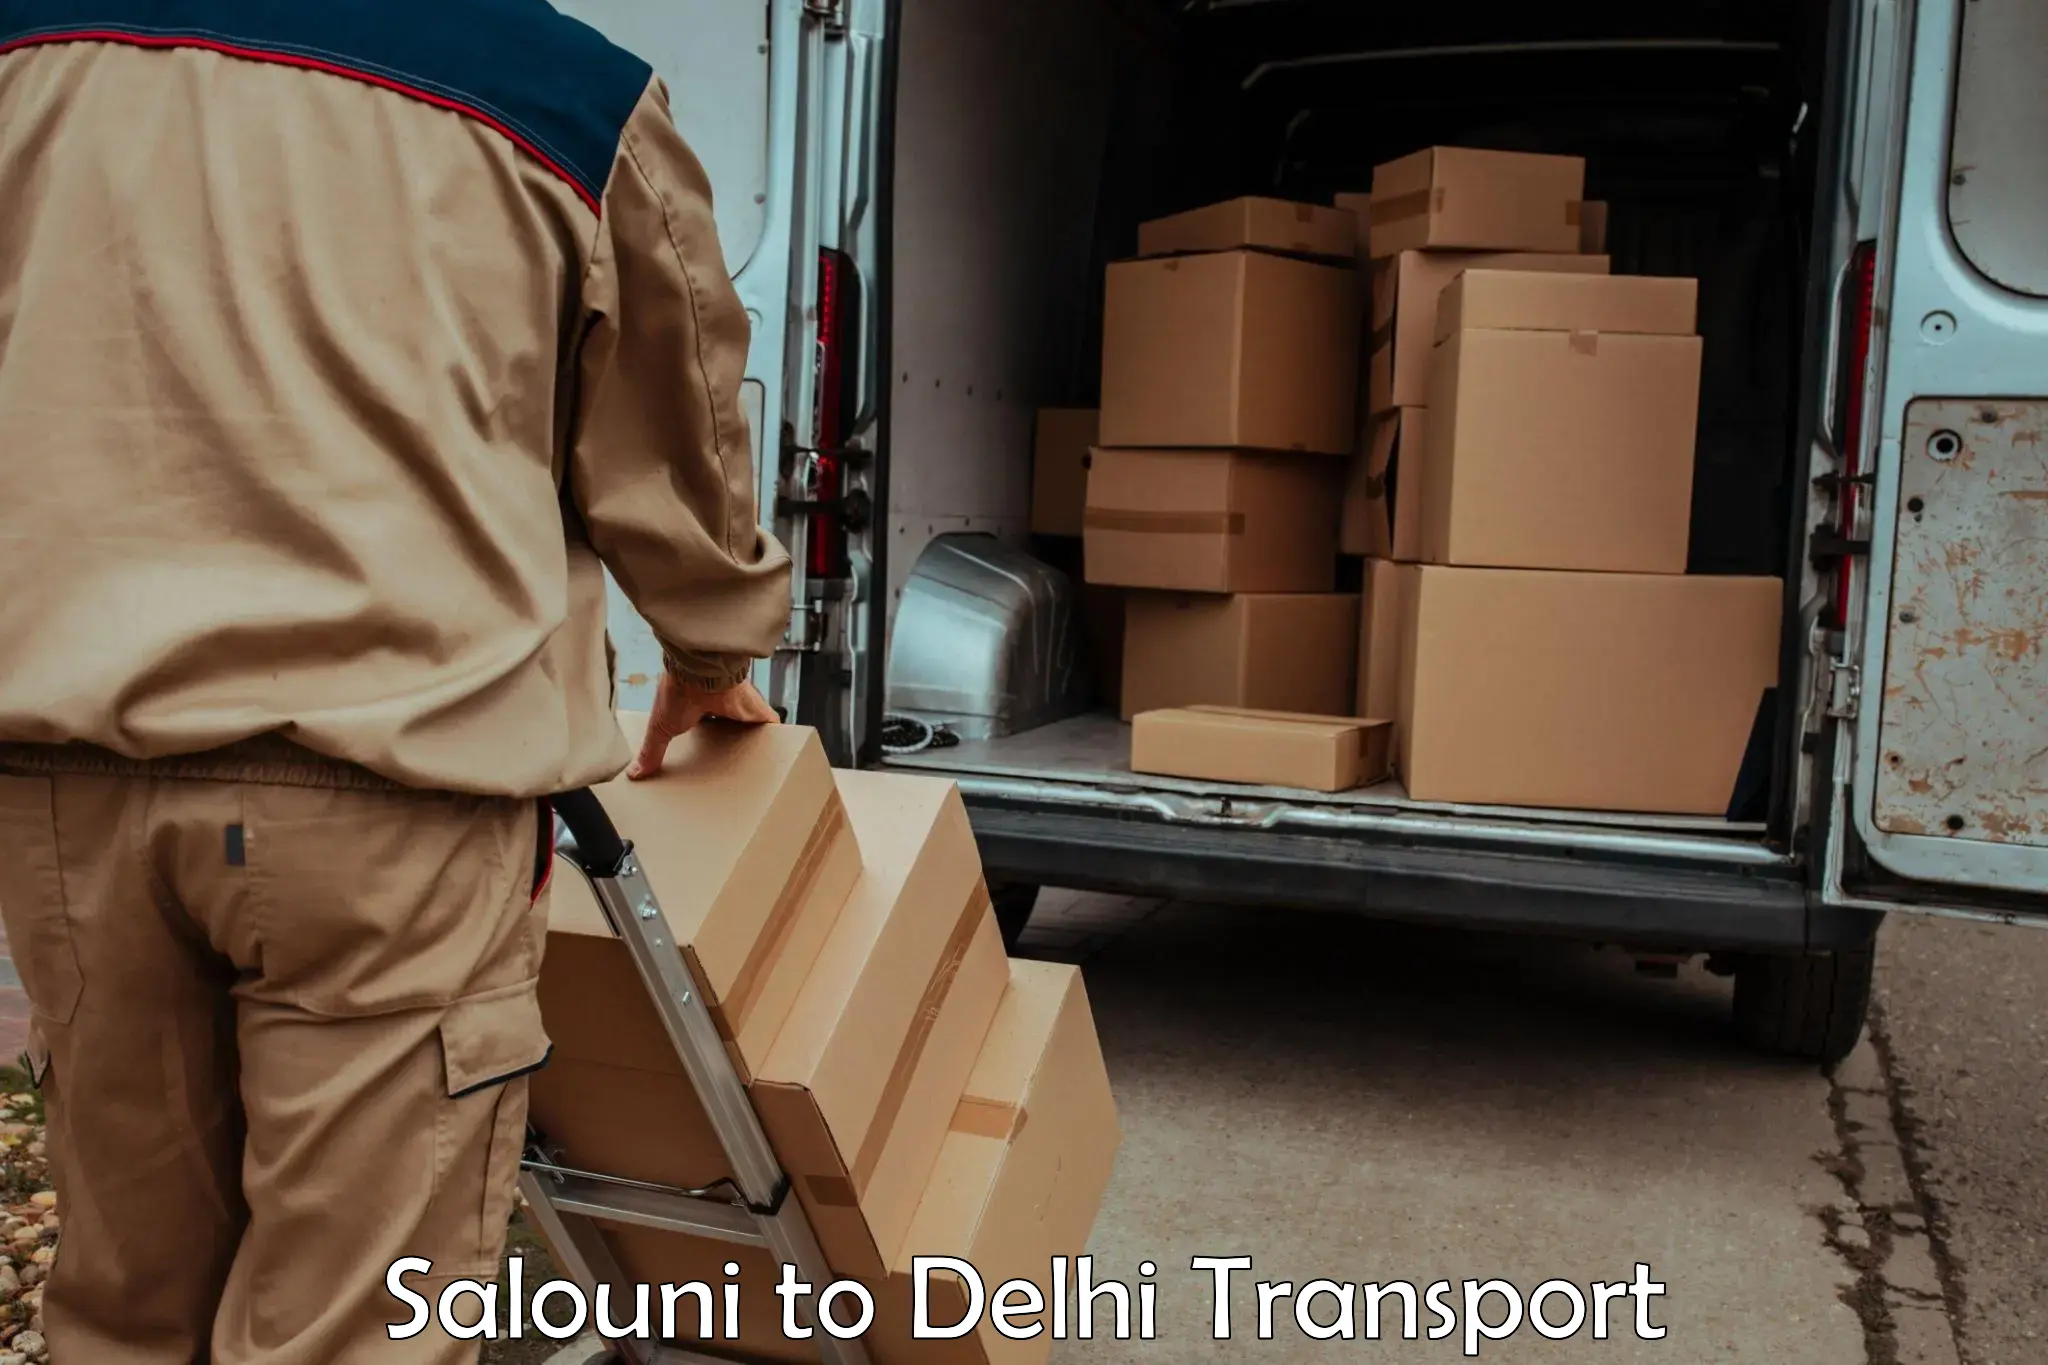 Delivery service Salouni to East Delhi